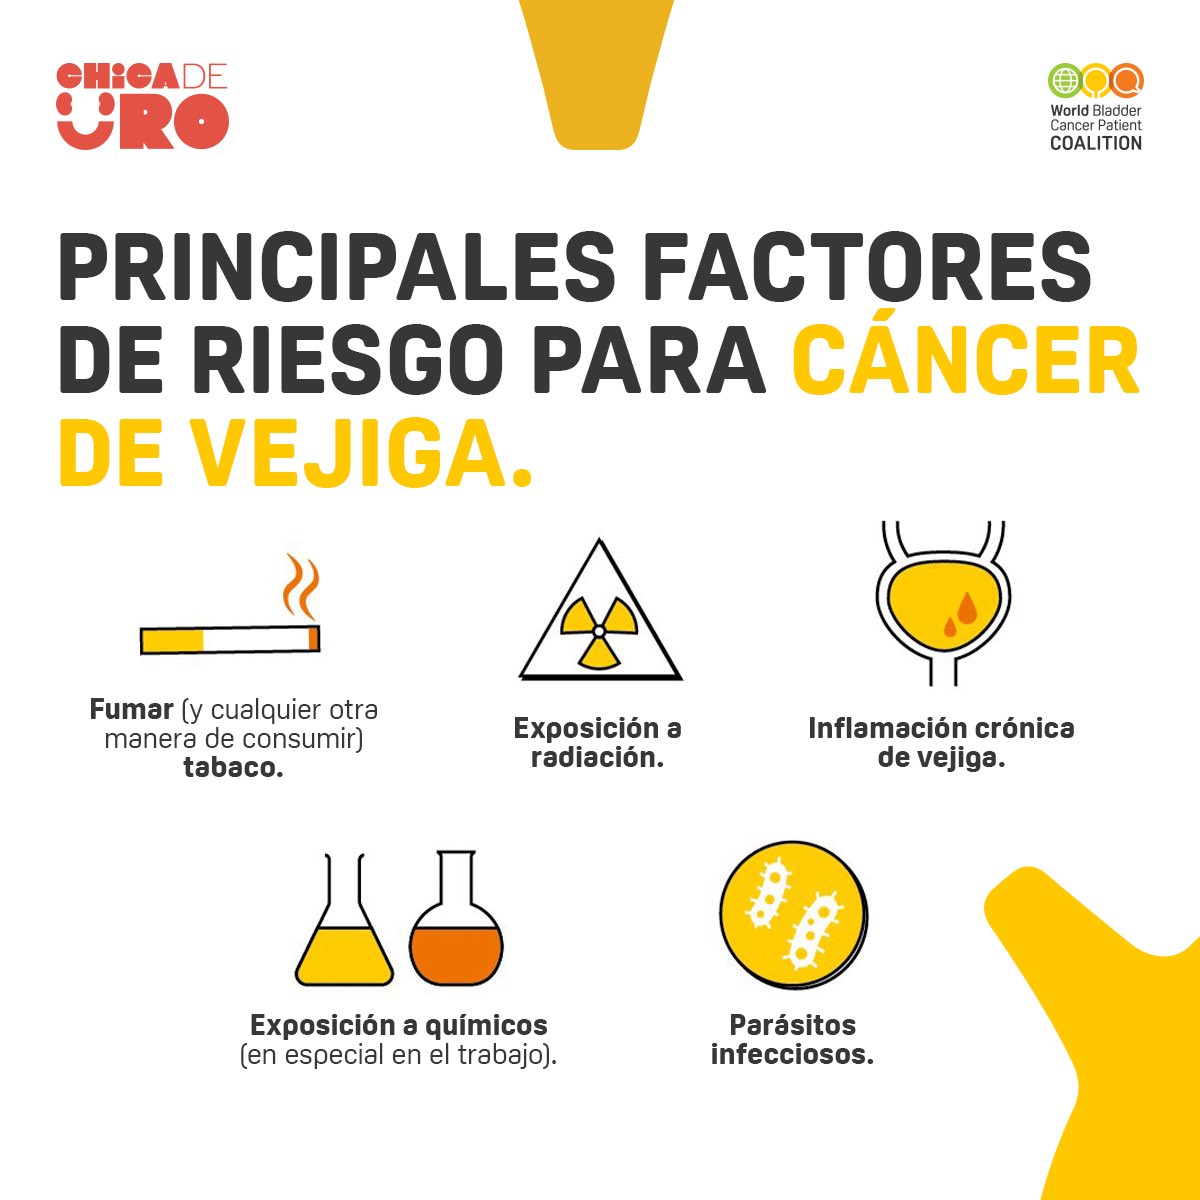 ⚠️Principales Factores de riesgo para el #CancerDeVejiga ⬇️
📌Tabaquismo
📌Exposición a Radiación☢️
📌Inflamación Crónica de la Vejiga
📌Exposición laboral a sustancias químicas🧪🧑🏽‍🏭
📌Infecciones parasitarias🦠 

☑️Es 5 veces➕frecuente en hombres🧔🏻‍♂️que en mujeres👩🏽 #UroSoMe